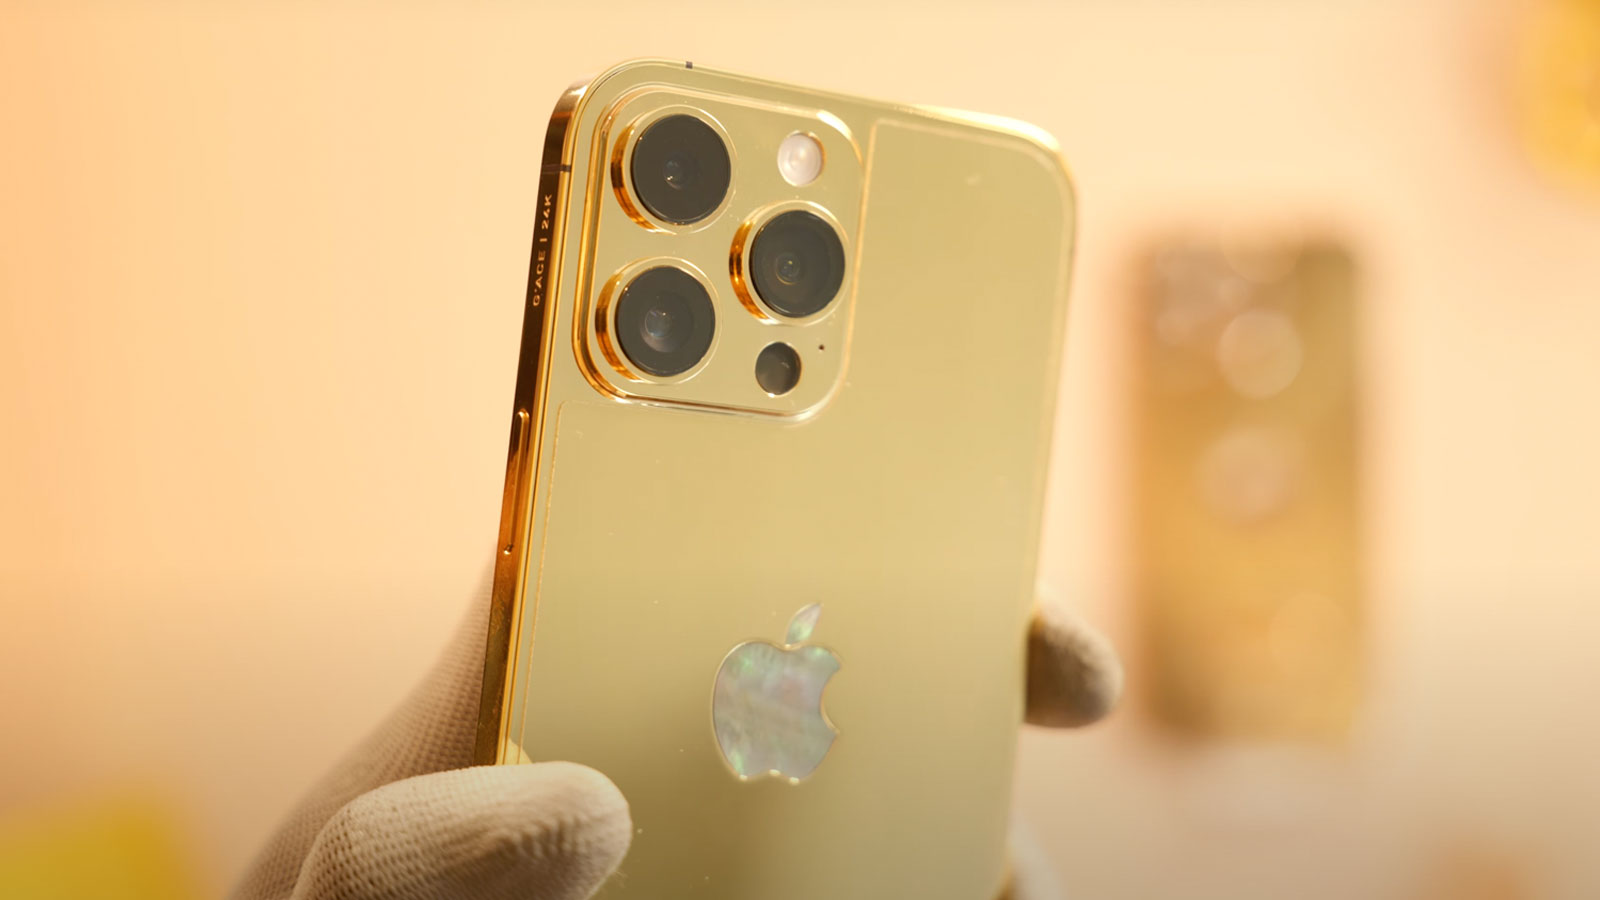 iPhone 14 Pro Max mạ vàng đính kim cương là một trong những phiên bản độc nhất vô nhị trên thế giới. Với thiết kế mạ vàng sang trọng và kim cương quý phái, chiếc điện thoại này là niềm ao ước của nhiều người. Hãy xem hình ảnh để cảm nhận sự đẳng cấp và sang trọng của sản phẩm này nhé.